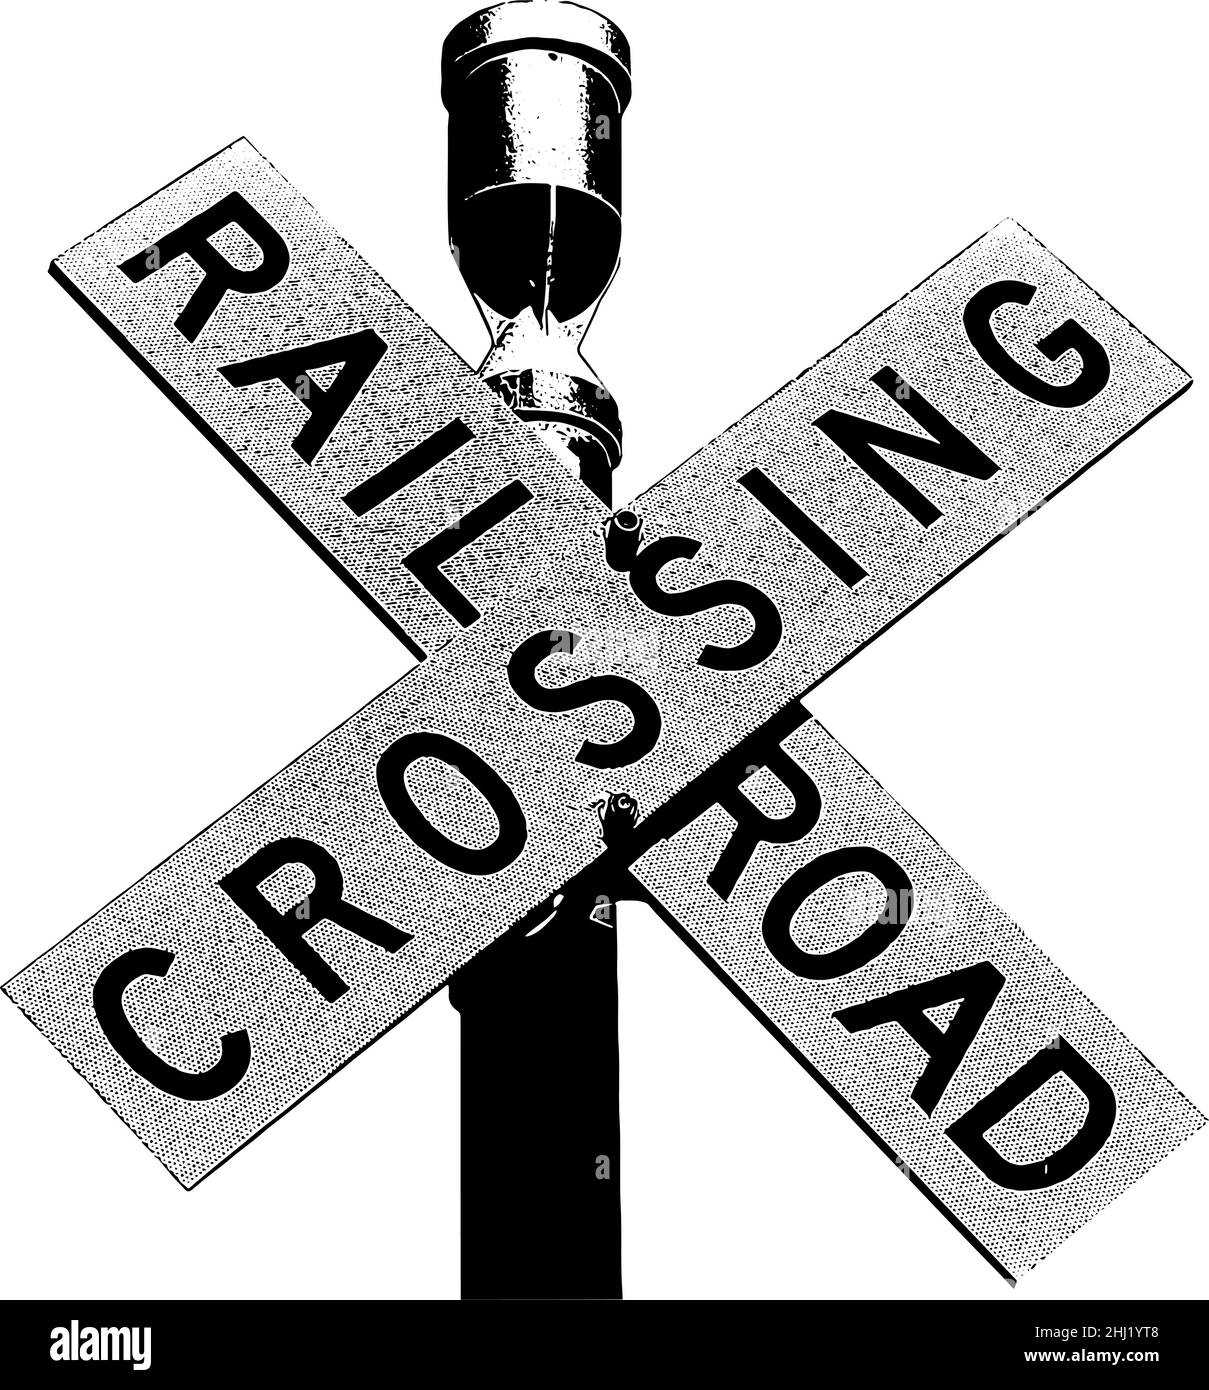 Bahnübergang Zeichen Vektor-Illustration in schwarz auf weißem Hintergrund Stock Vektor